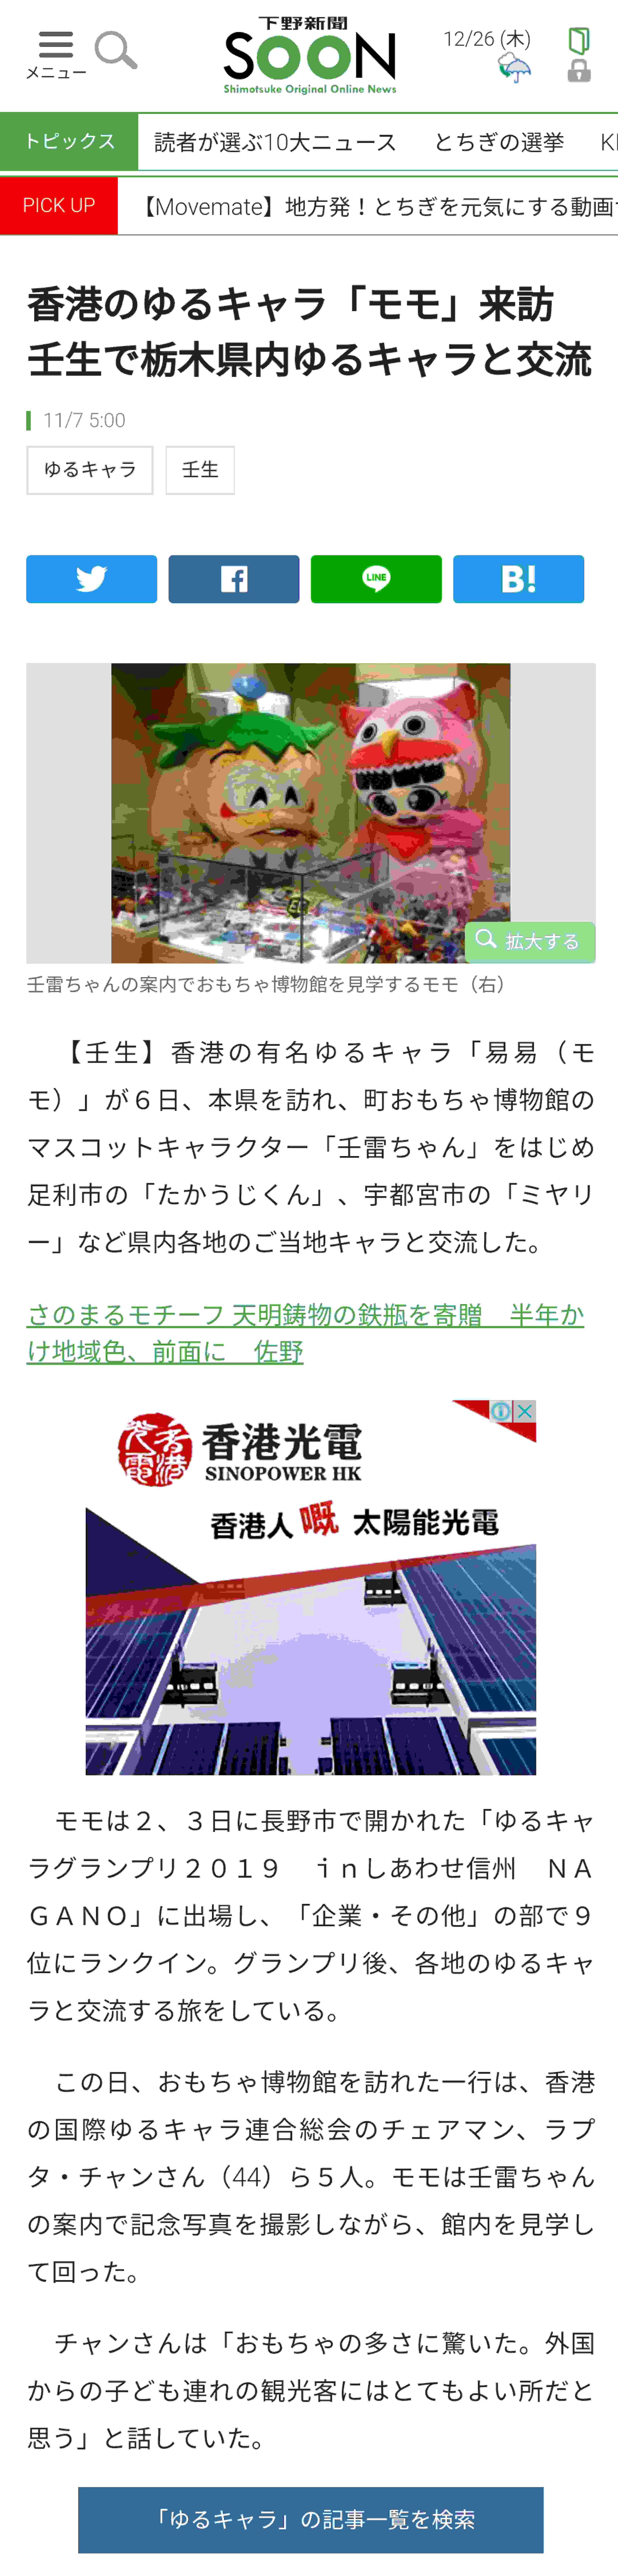 易易以親善大使的身份到訪日本櫪木縣受日本媒體『下野日報』報導